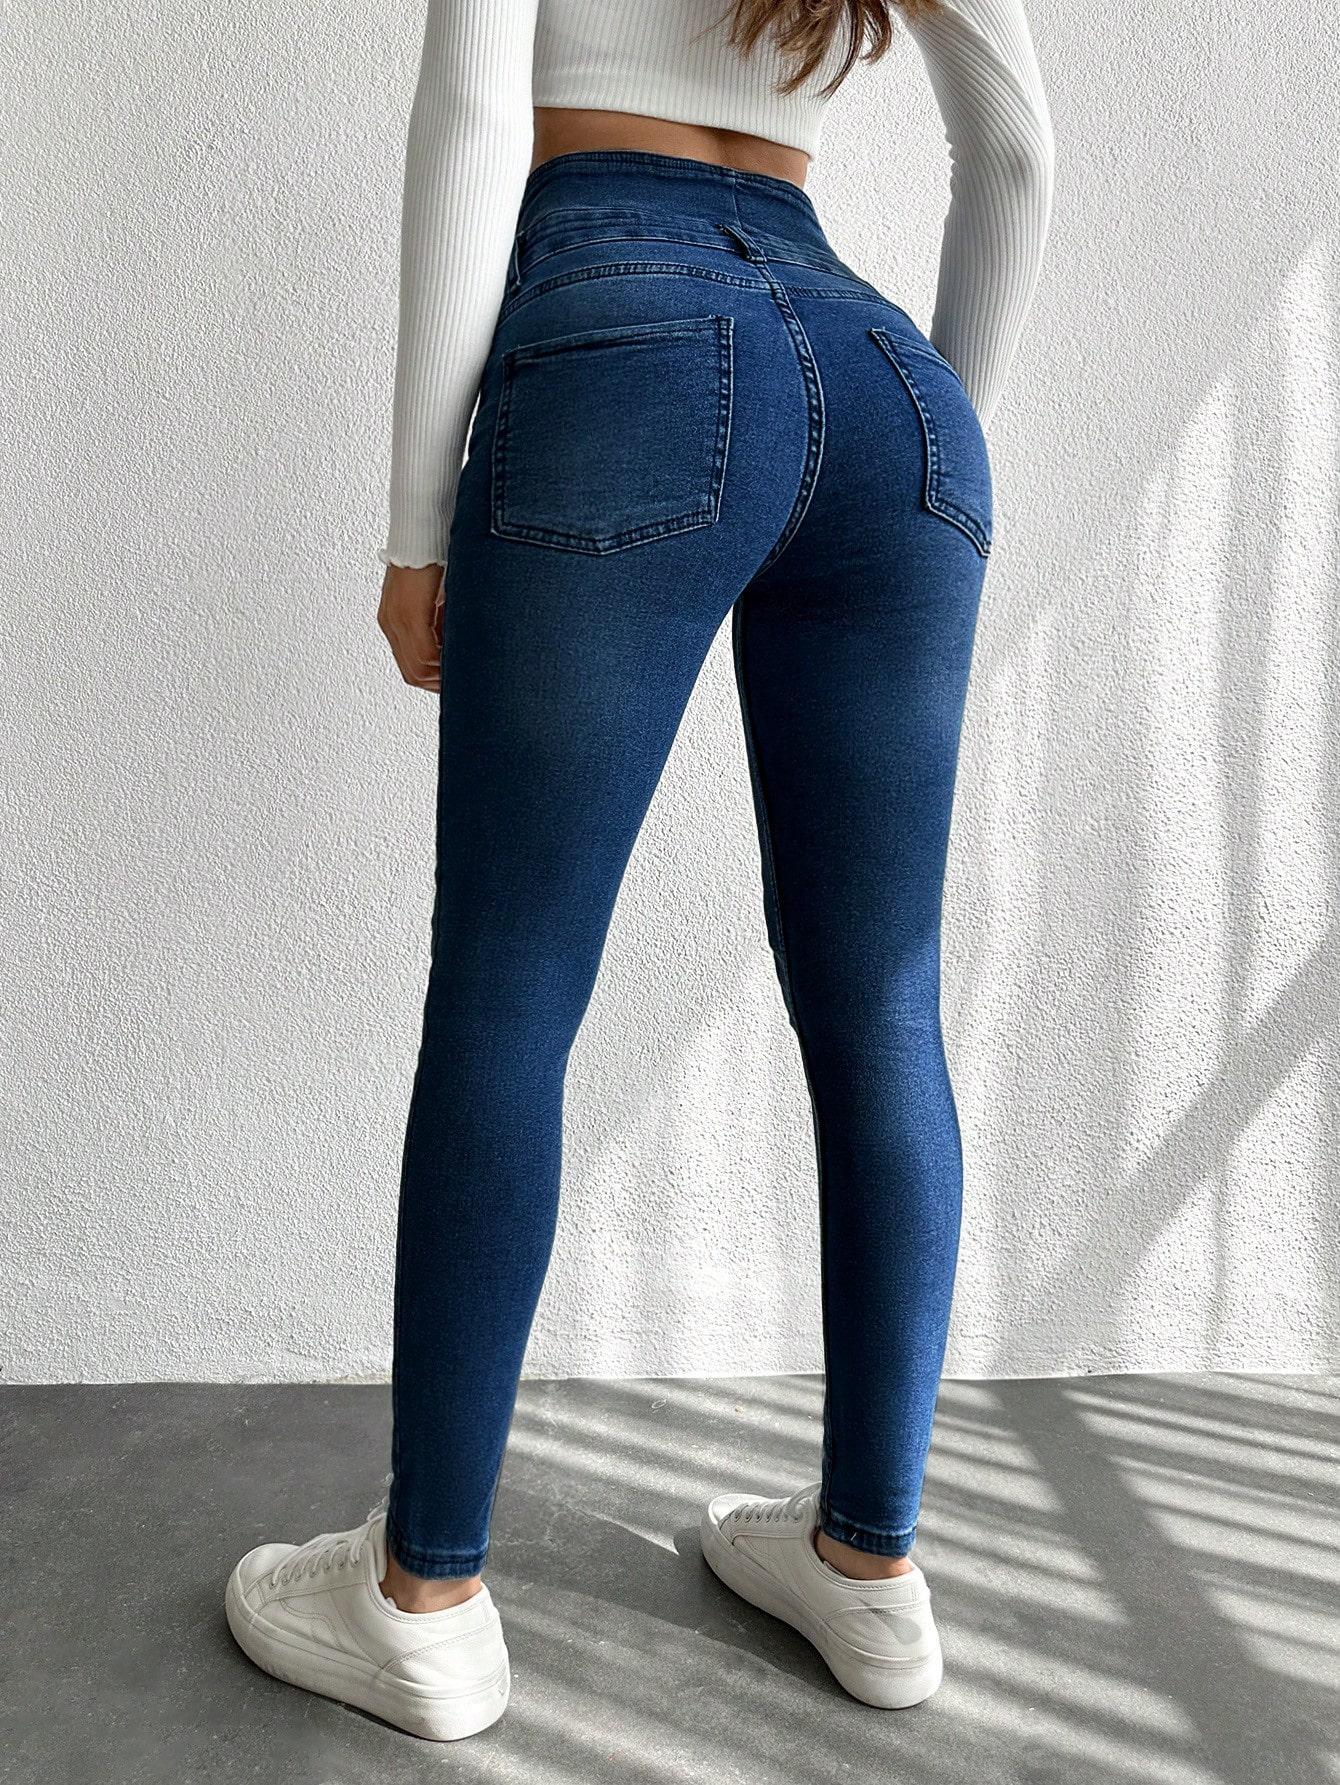 spodnie jeans rurki wysoki stan guziki